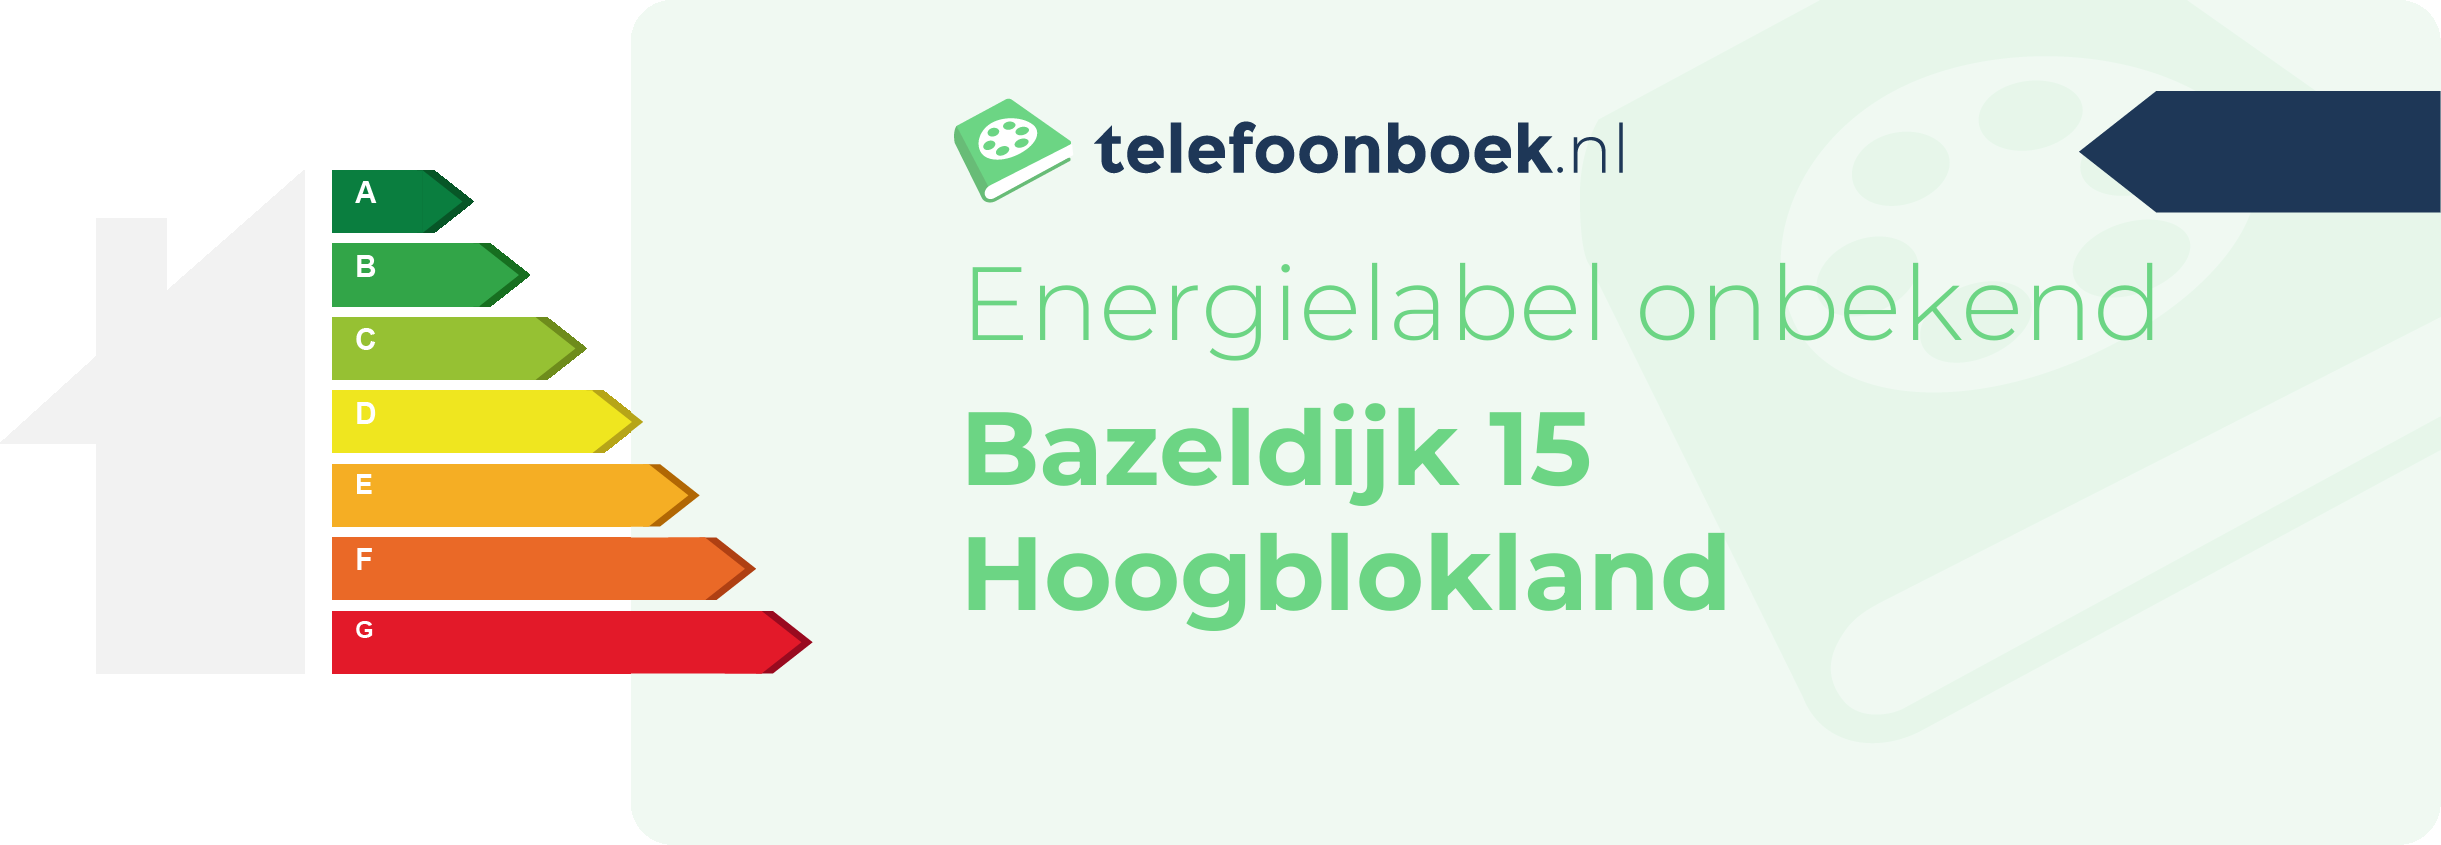 Energielabel Bazeldijk 15 Hoogblokland